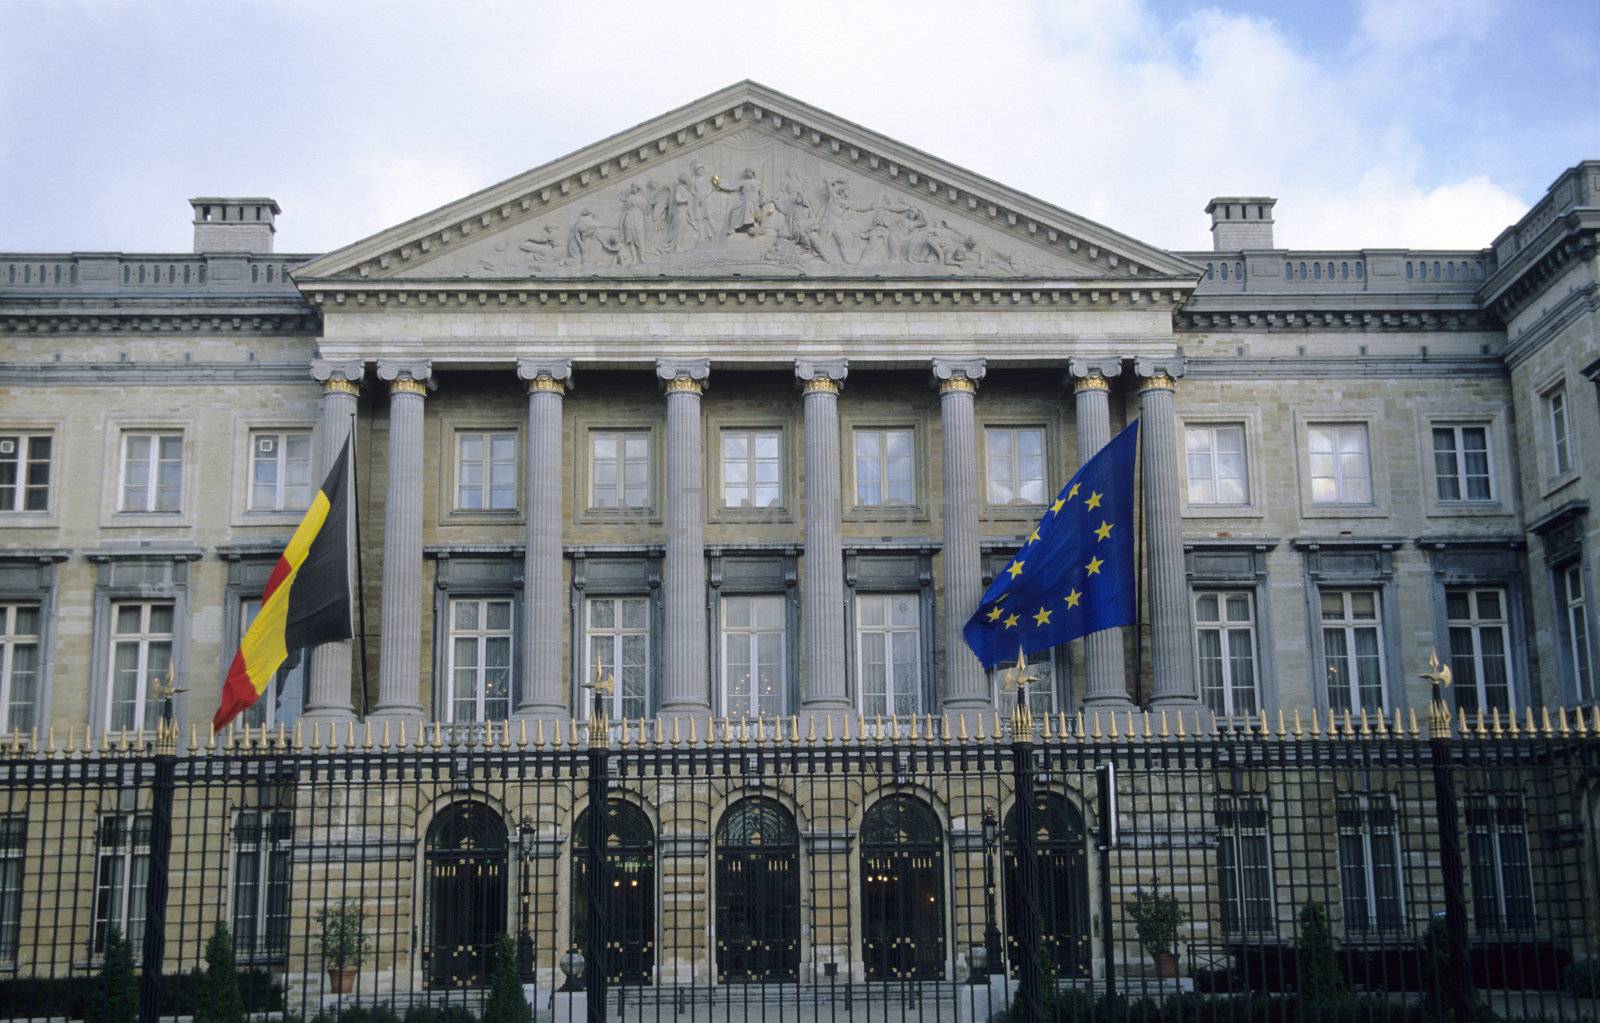 Belgian Parliament Building by ACMPhoto